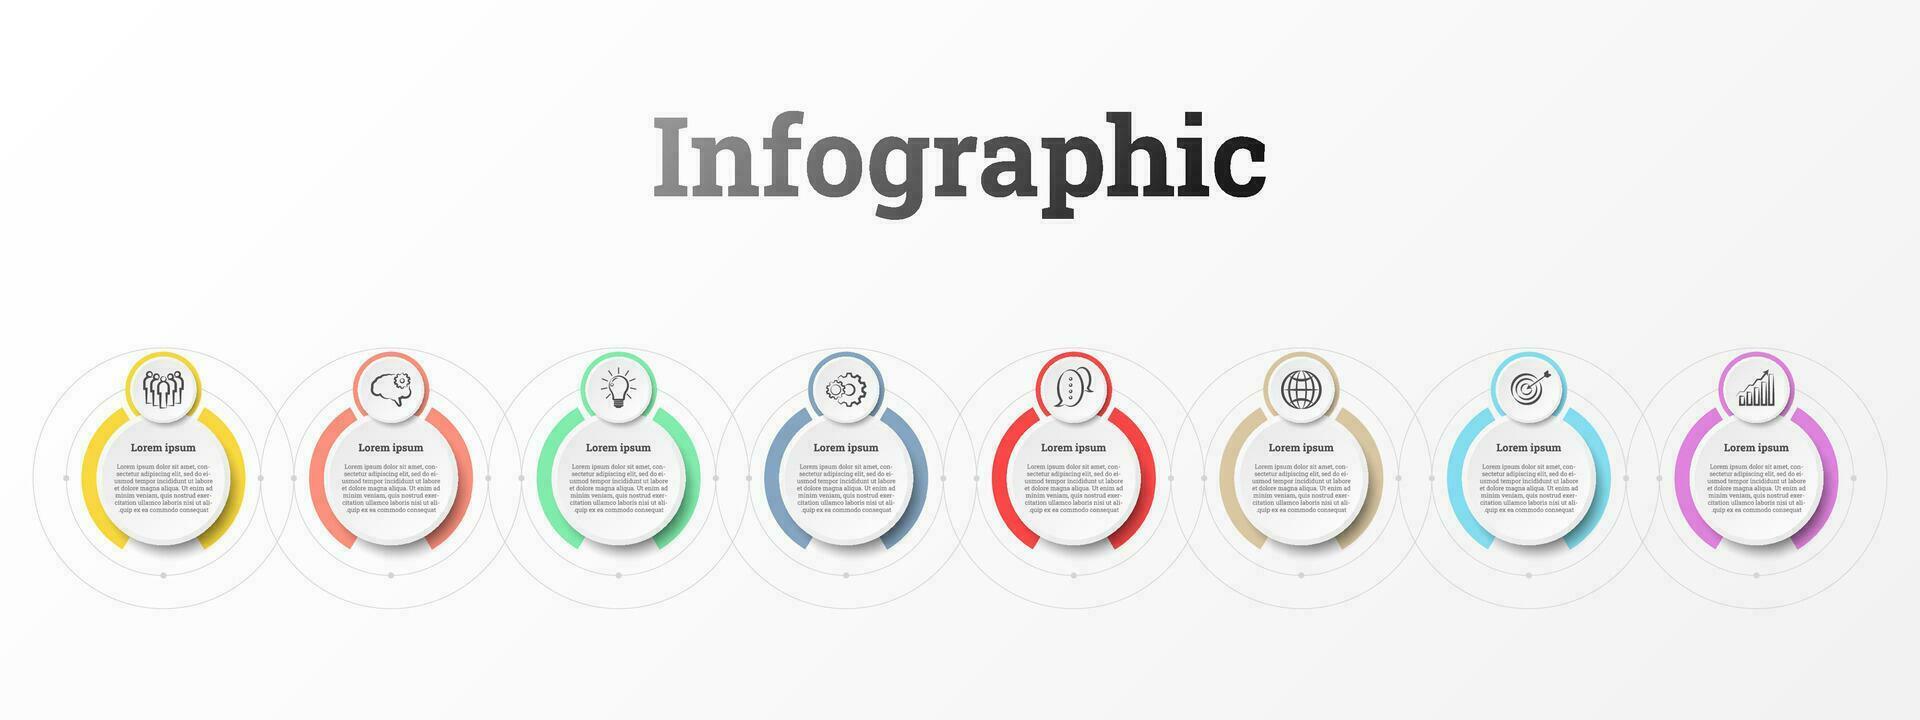 infographic dat biedt een gedetailleerd verslag doen van van de bedrijf, verdeeld in 8 onderwerpen. vector